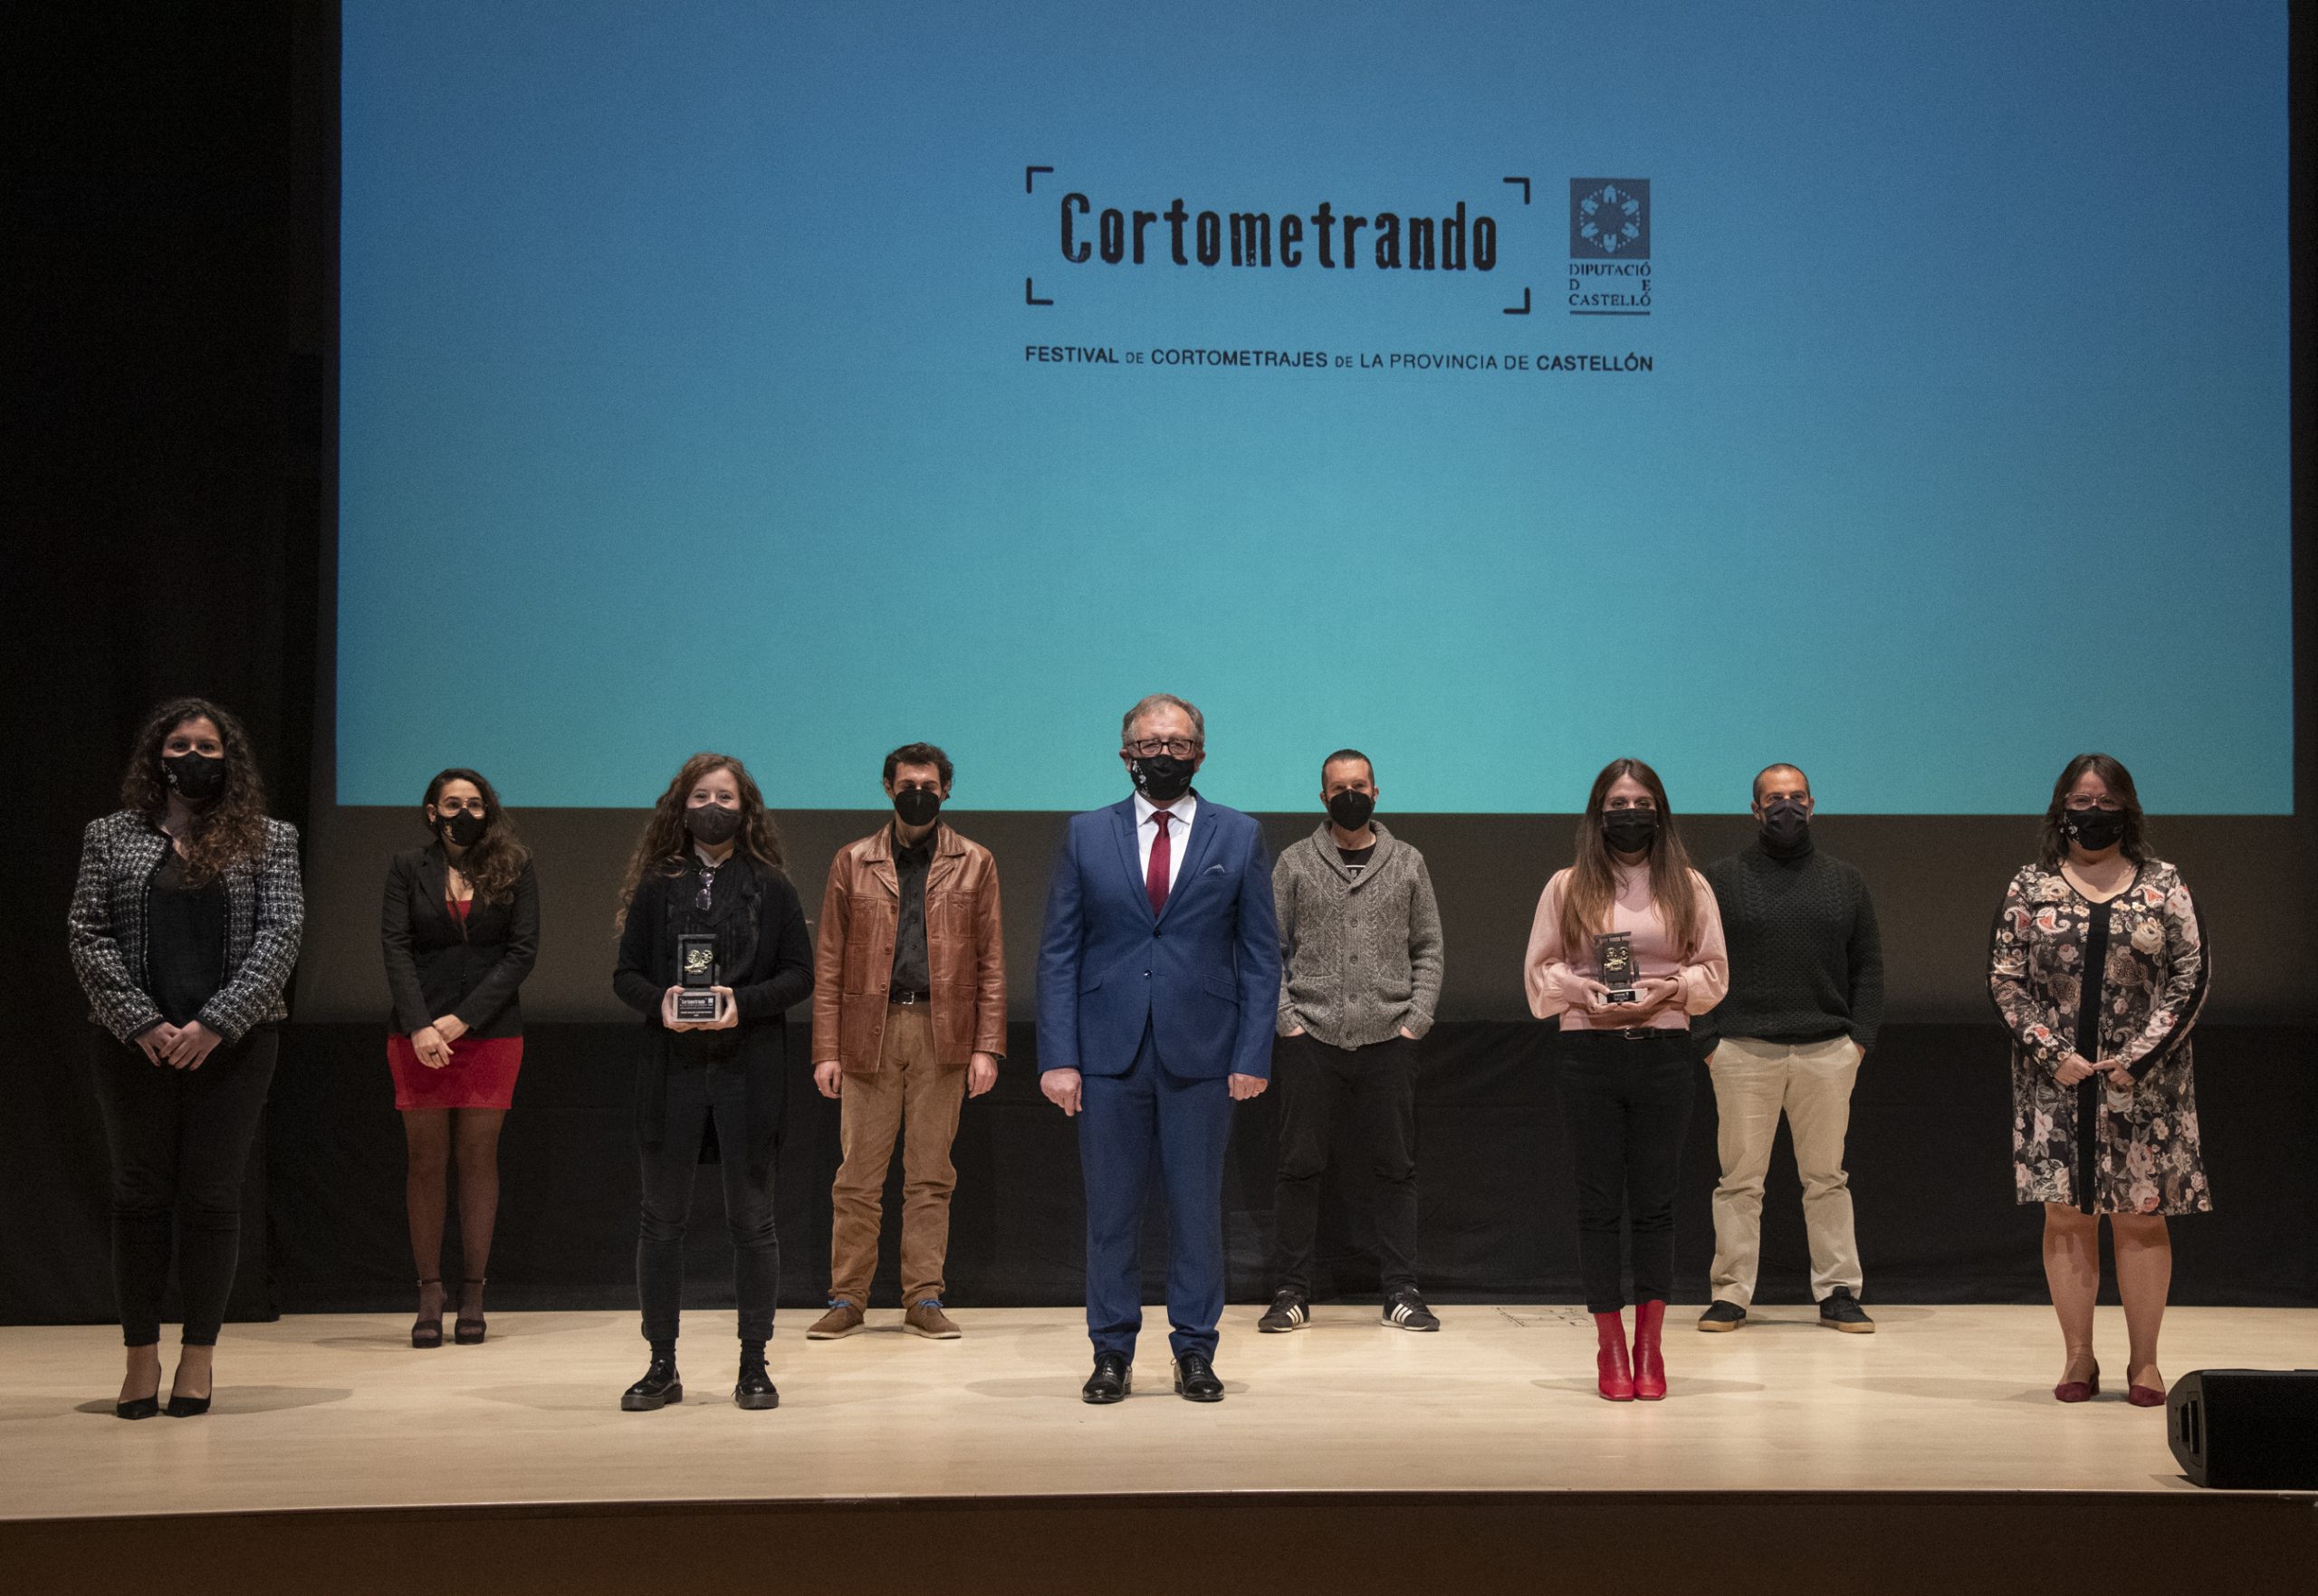 La Diputación recupera la ficción como género protagonista de ‘Cortometrando’ y añade nuevos premios para dar mayor emoción a la gala final